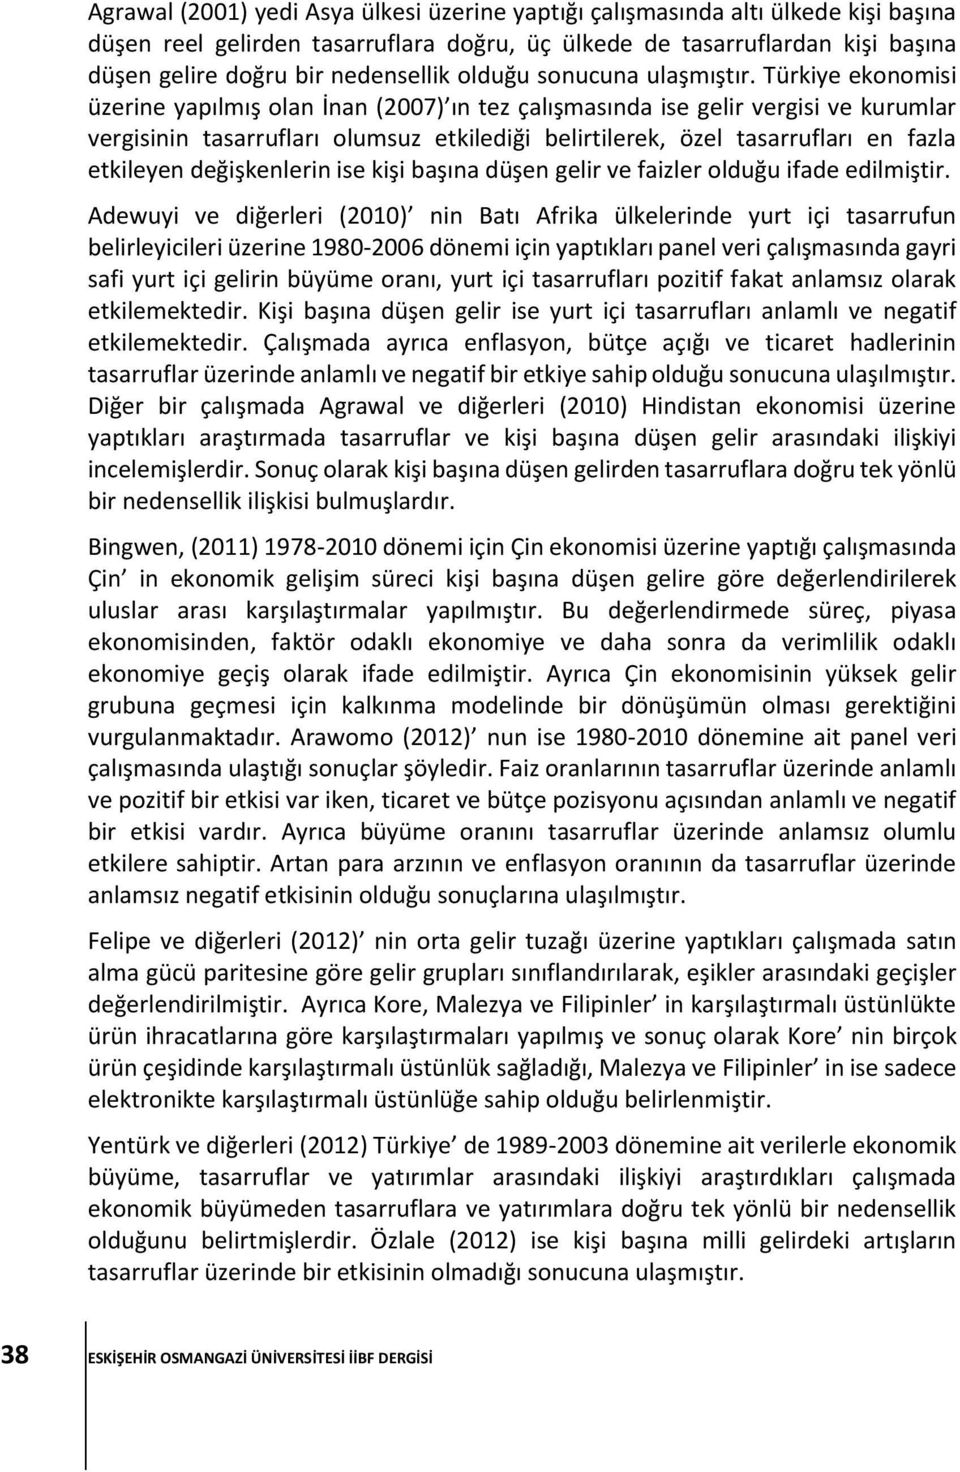 Türkiye ekonomisi üzerine yapılmış olan İnan (2007) ın tez çalışmasında ise gelir vergisi ve kurumlar vergisinin tasarrufları olumsuz etkilediği belirtilerek, özel tasarrufları en fazla etkileyen